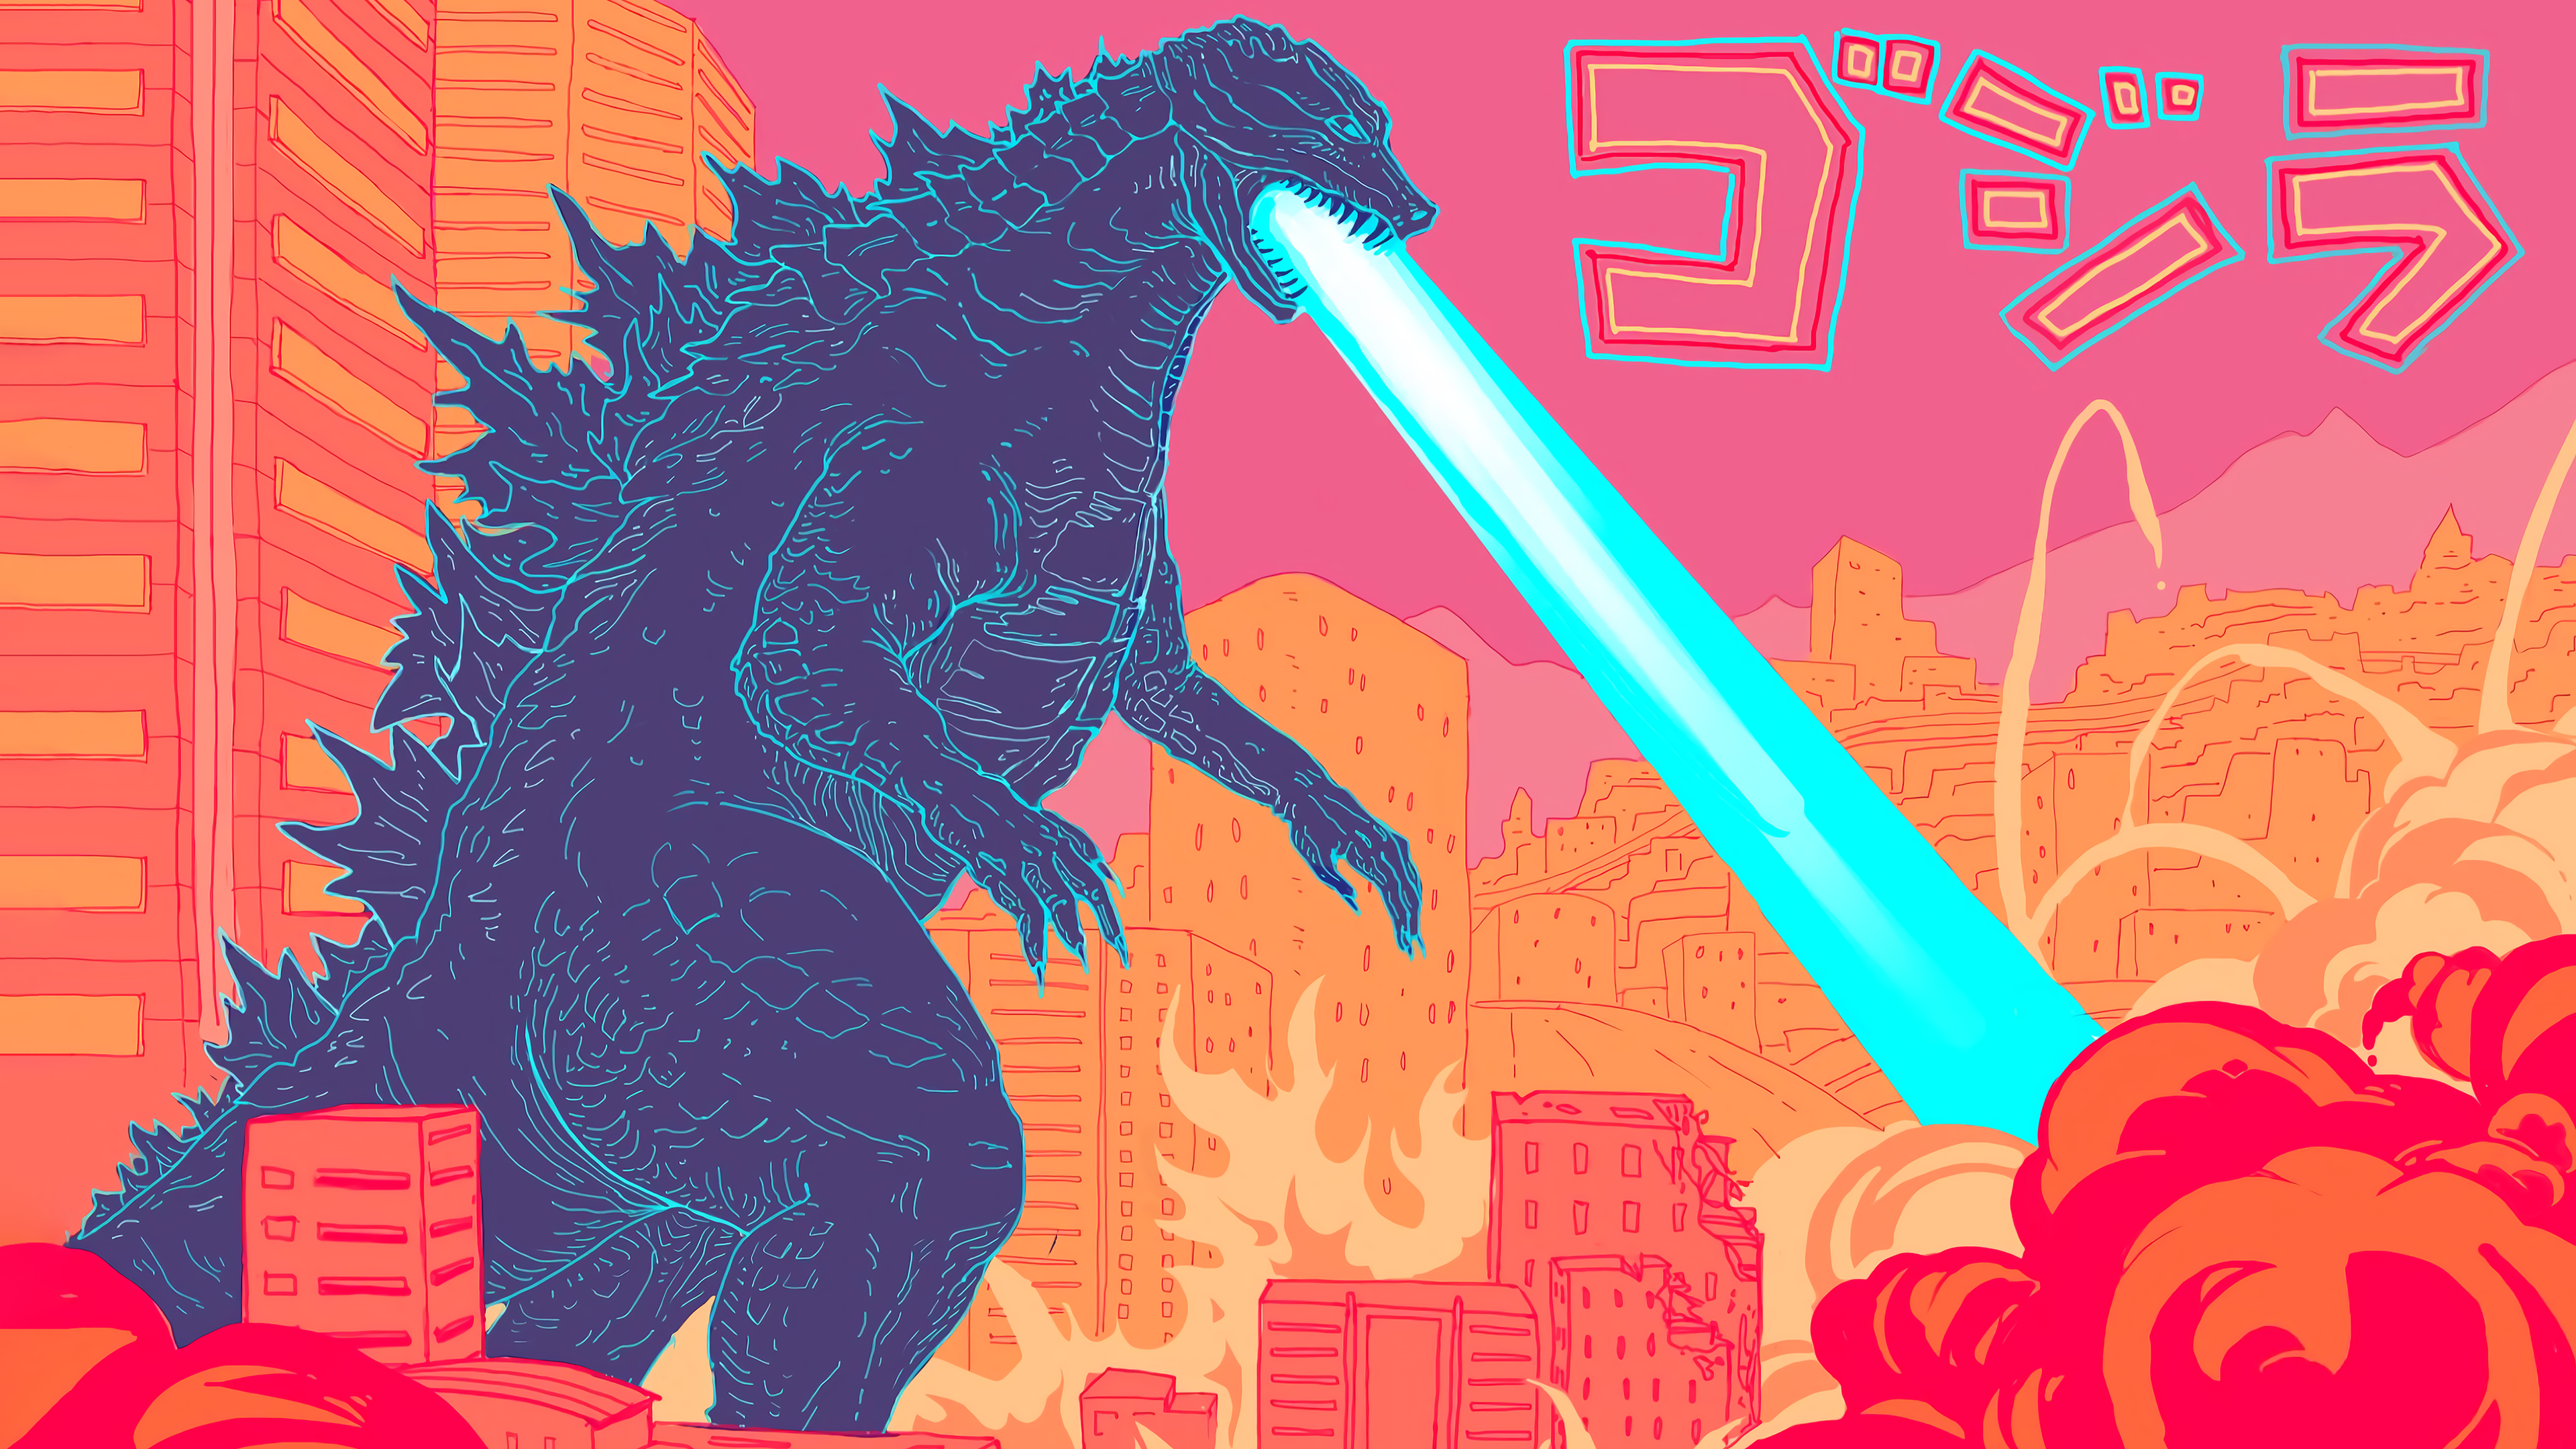 Revival de séries: Godzilla 🐲